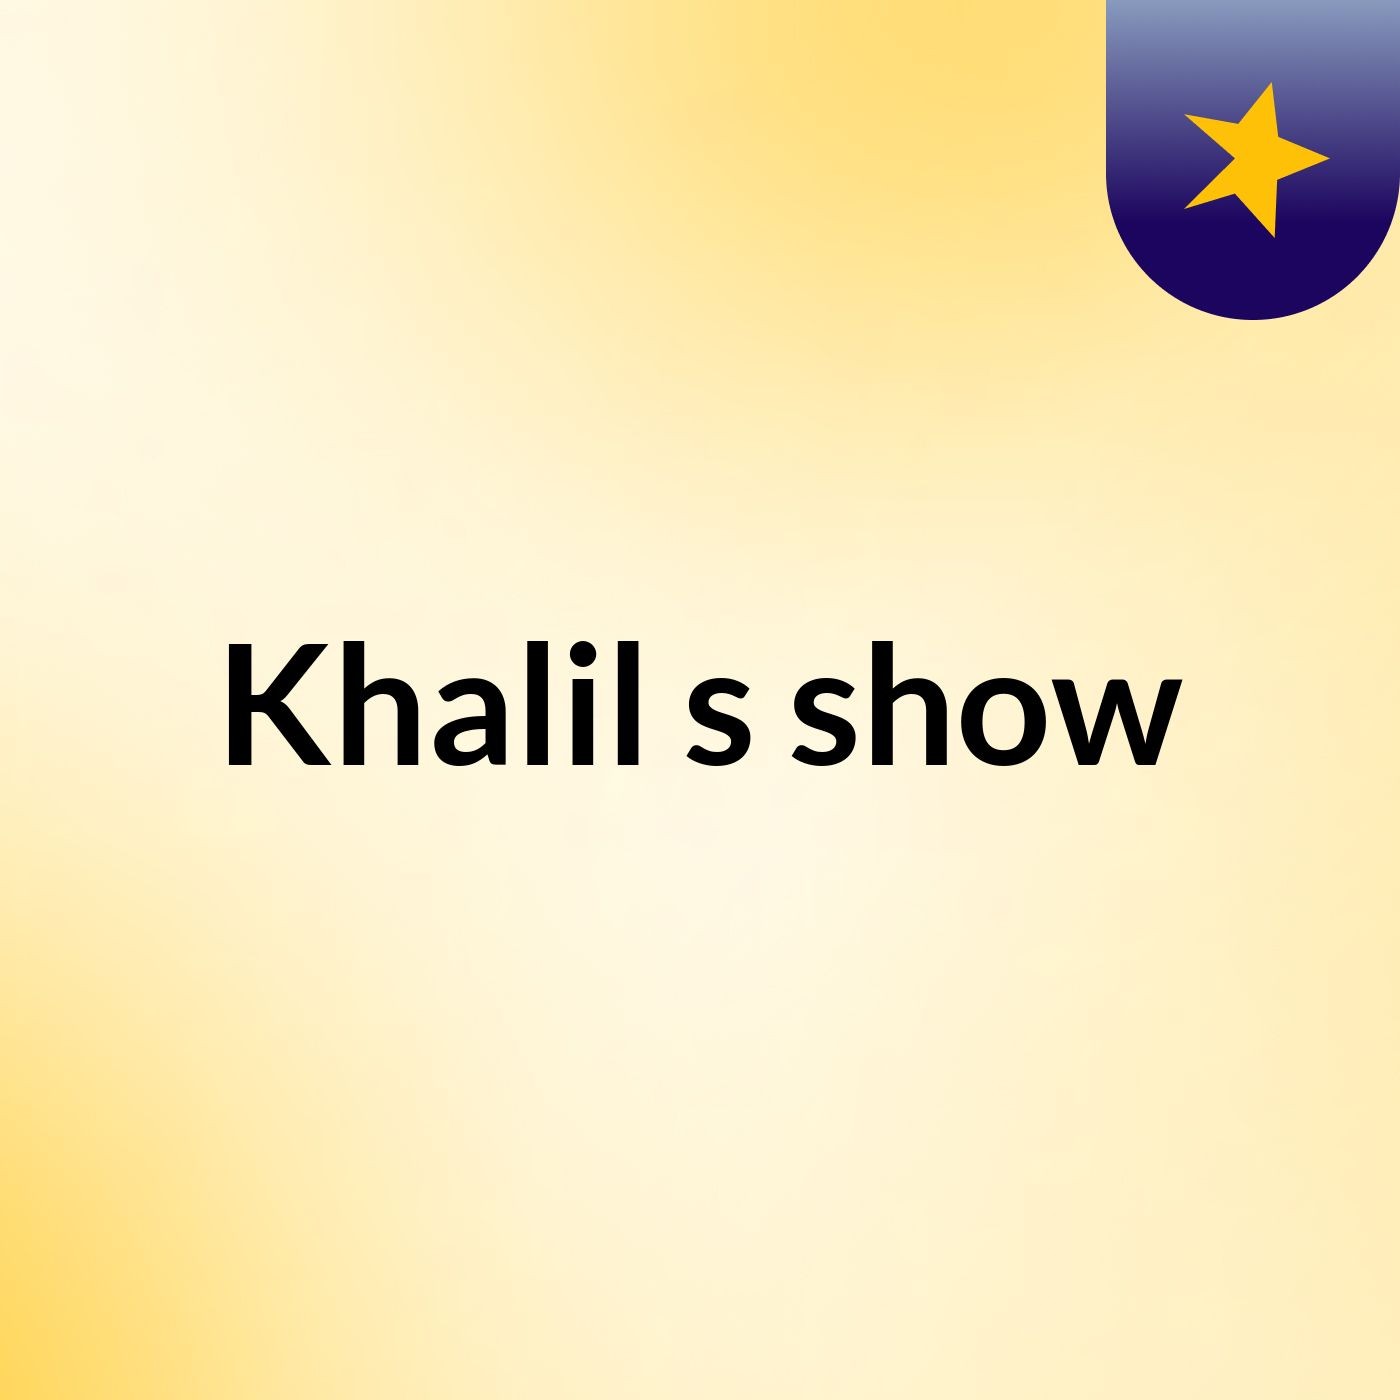 Khalil's show